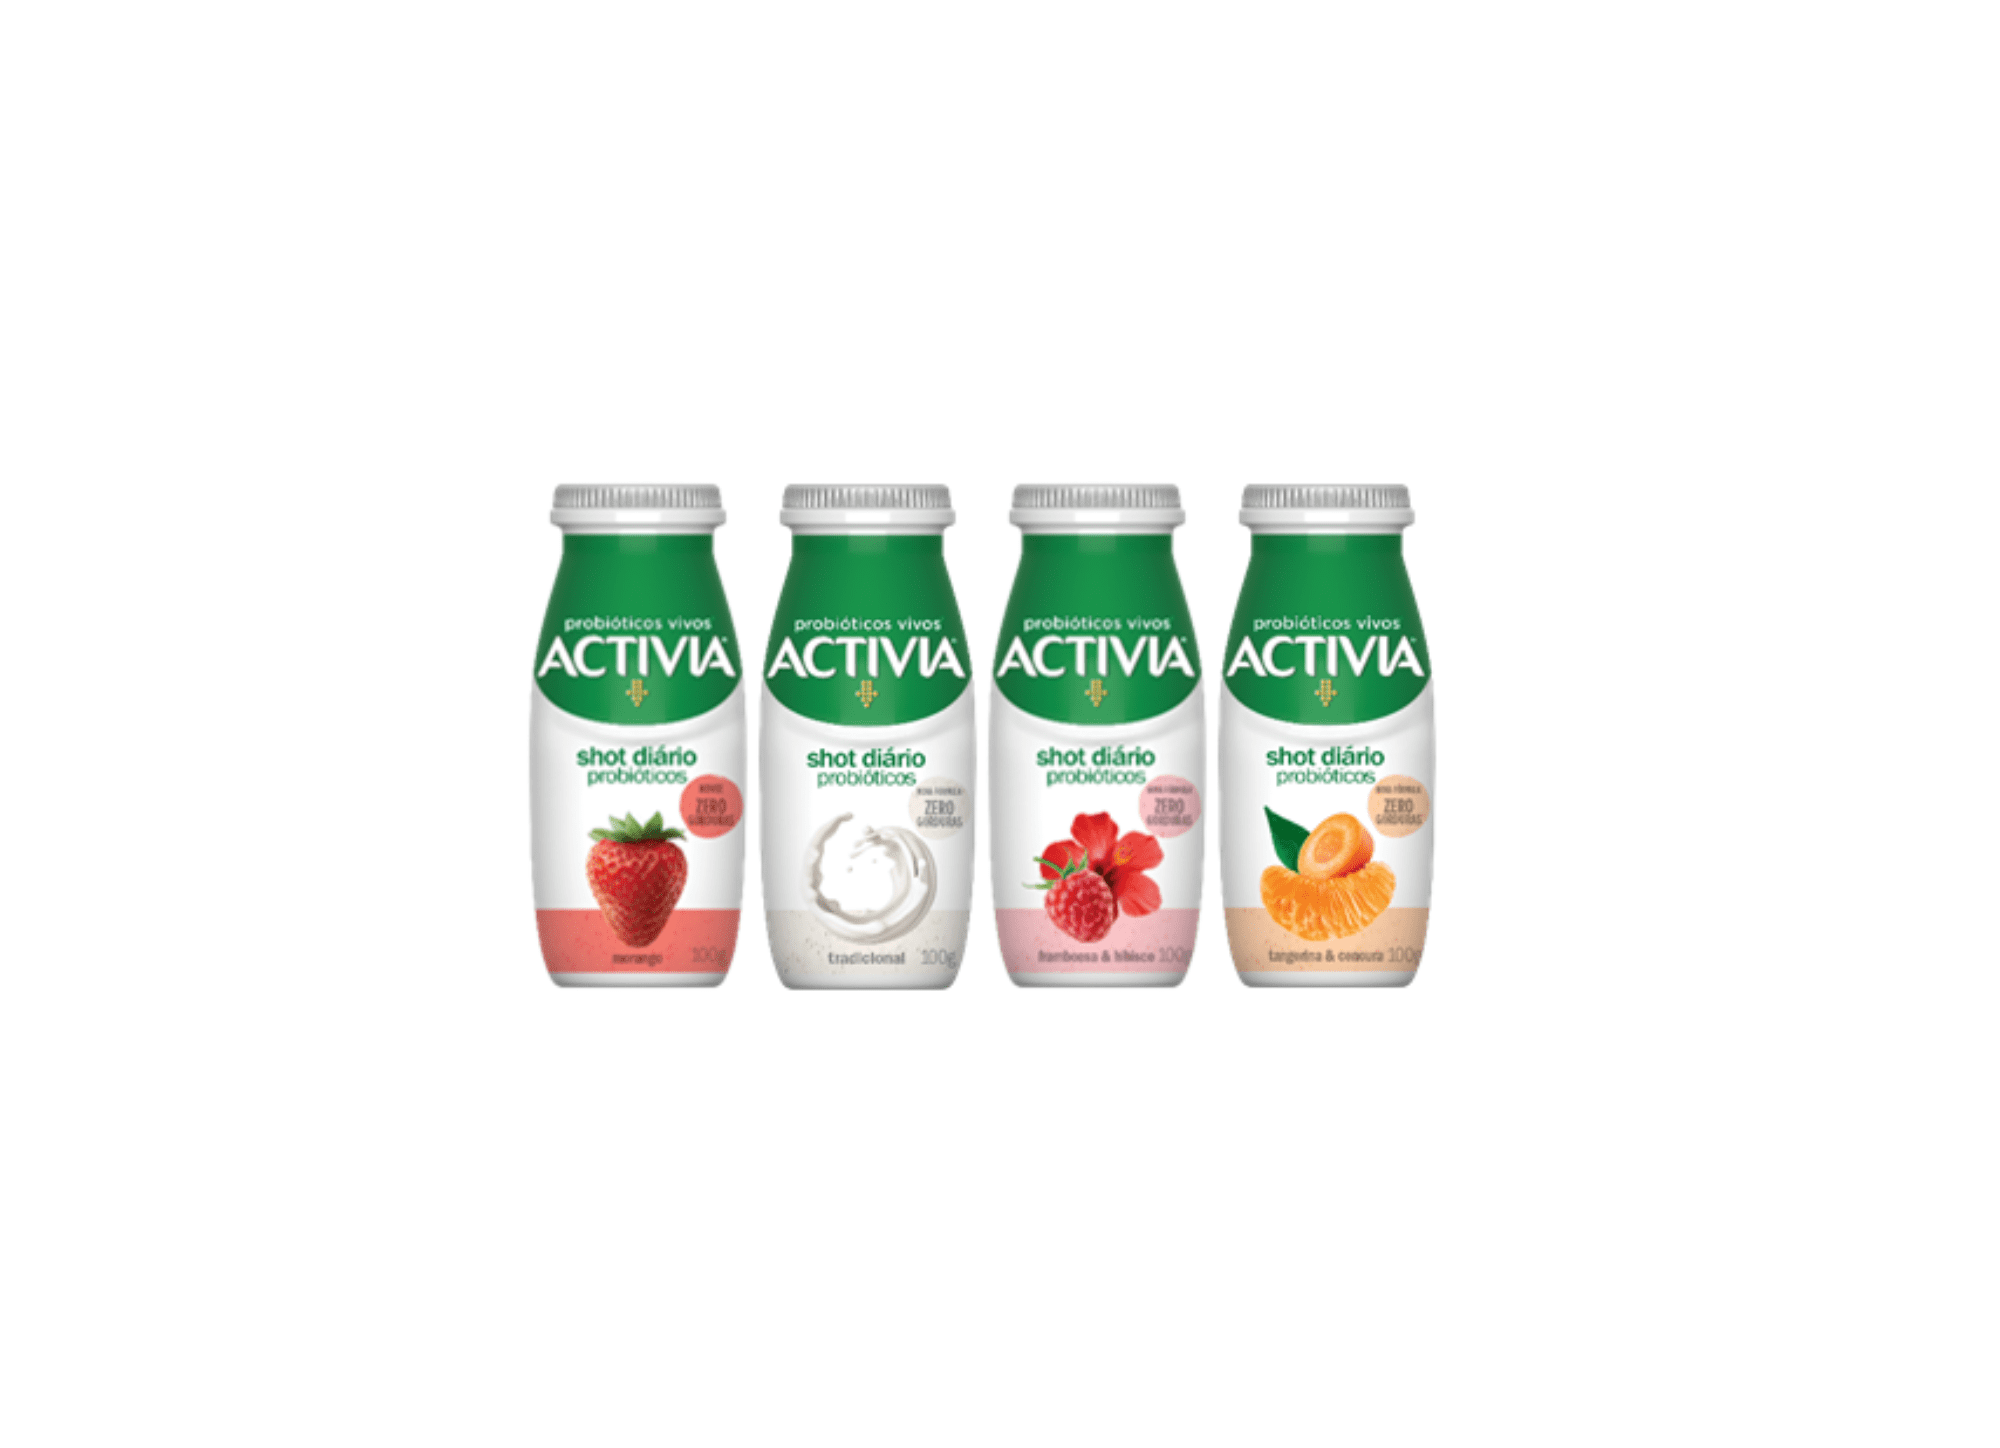 Featured image for “Activia relança a linha shot com nova fórmula “zero gorduras””